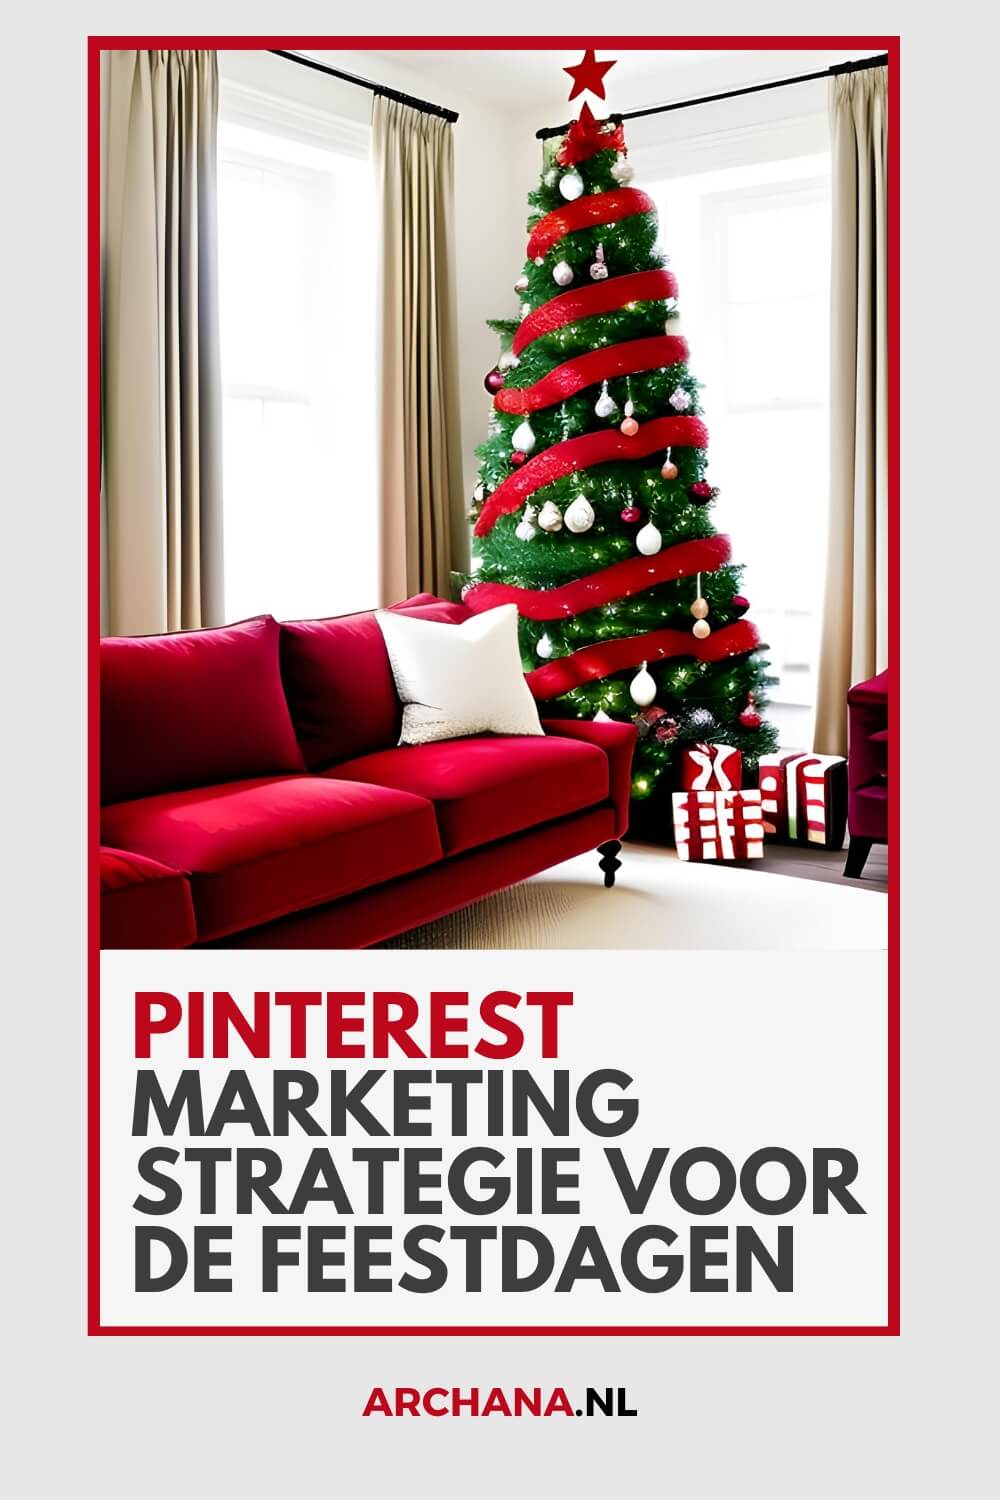 Pinterest marketing strategie voor de feestdagen - ARCHANA.NL